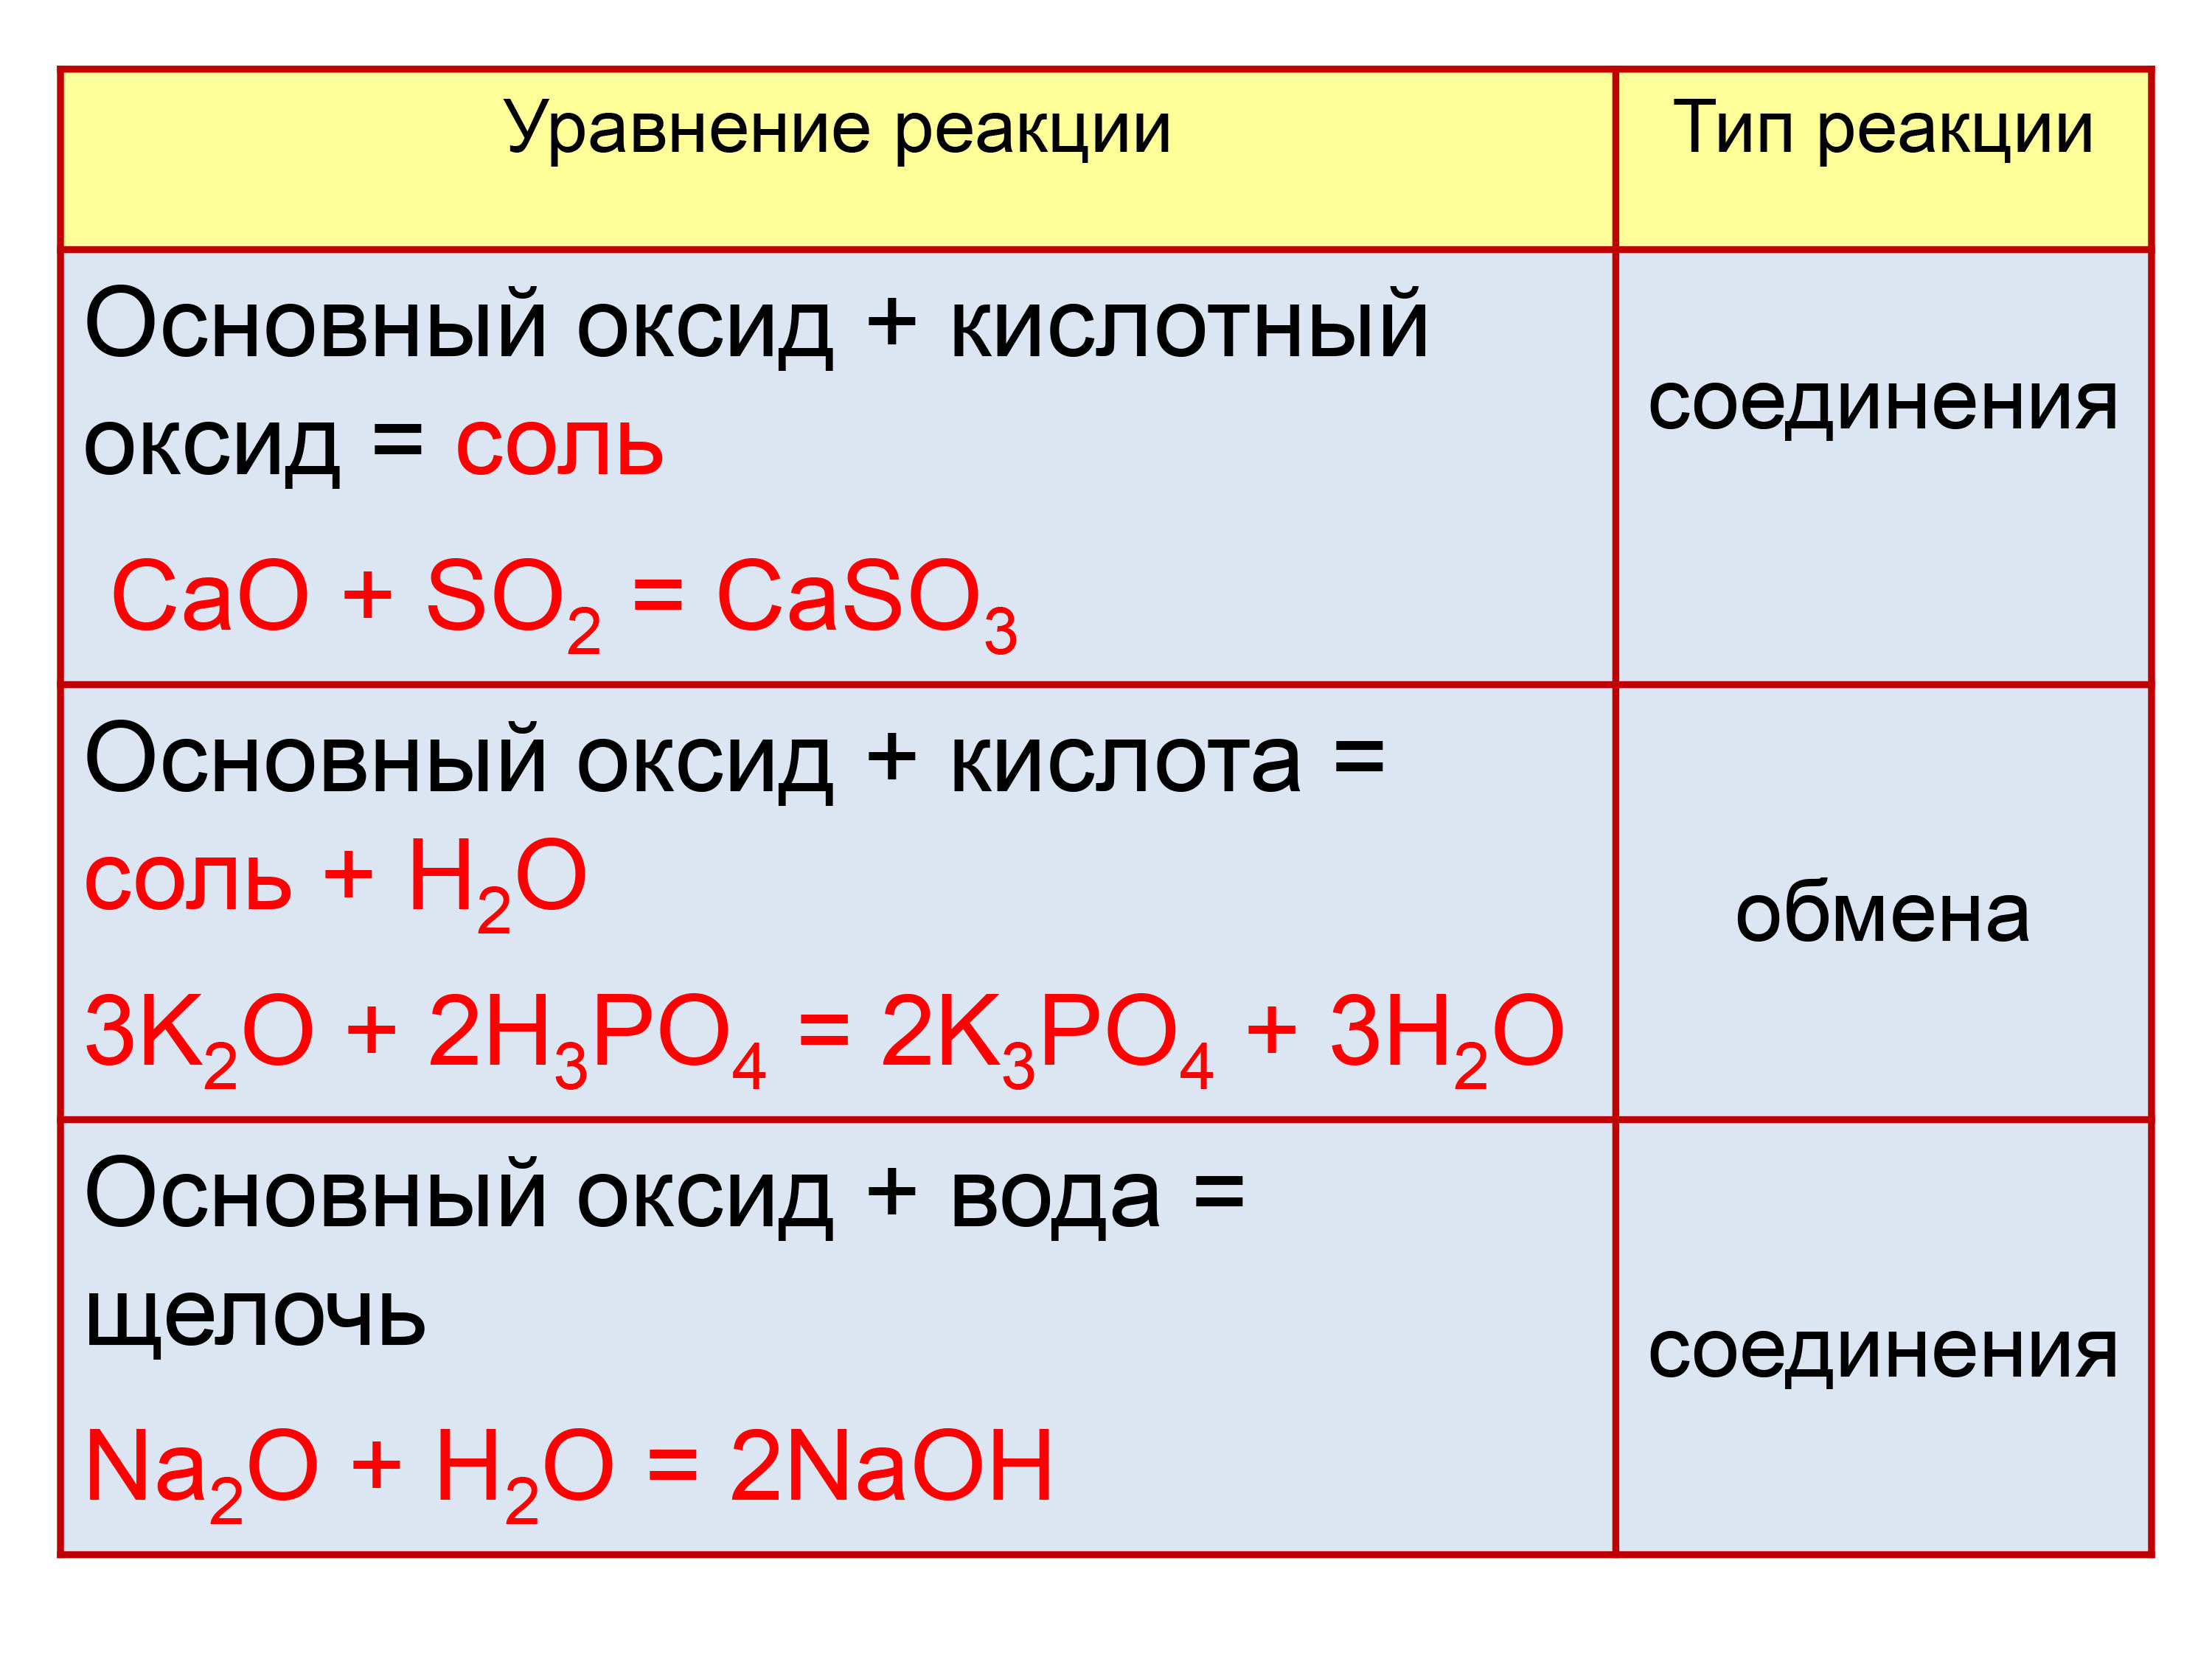 Физические и химические свойства оксидов